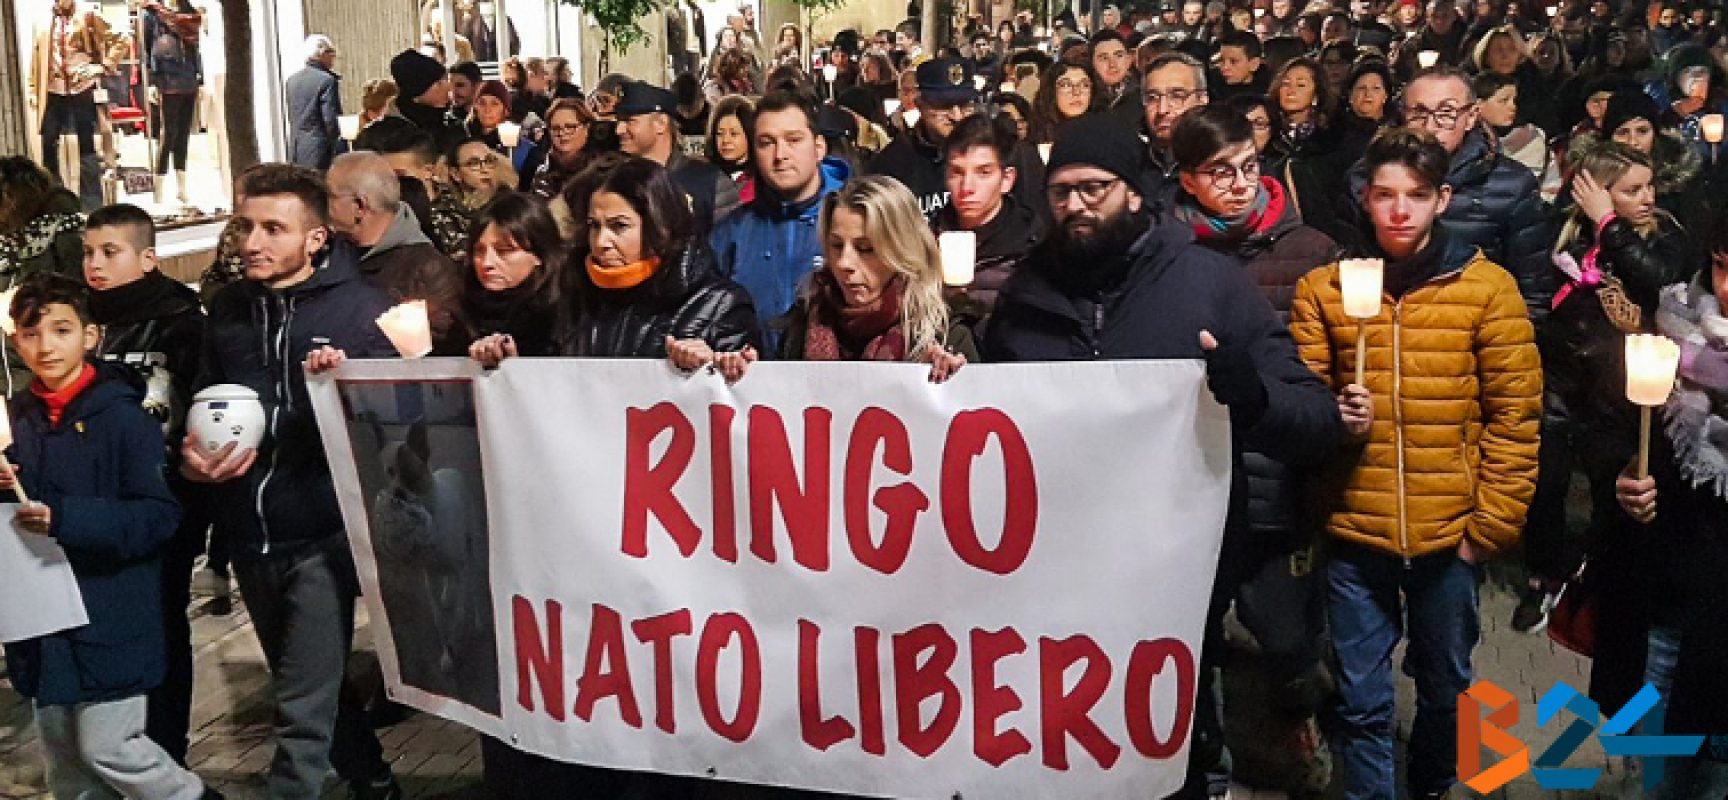 Centinaia di persone in strada per Ringo, gli organizzatori: “Investito e non soccorso”